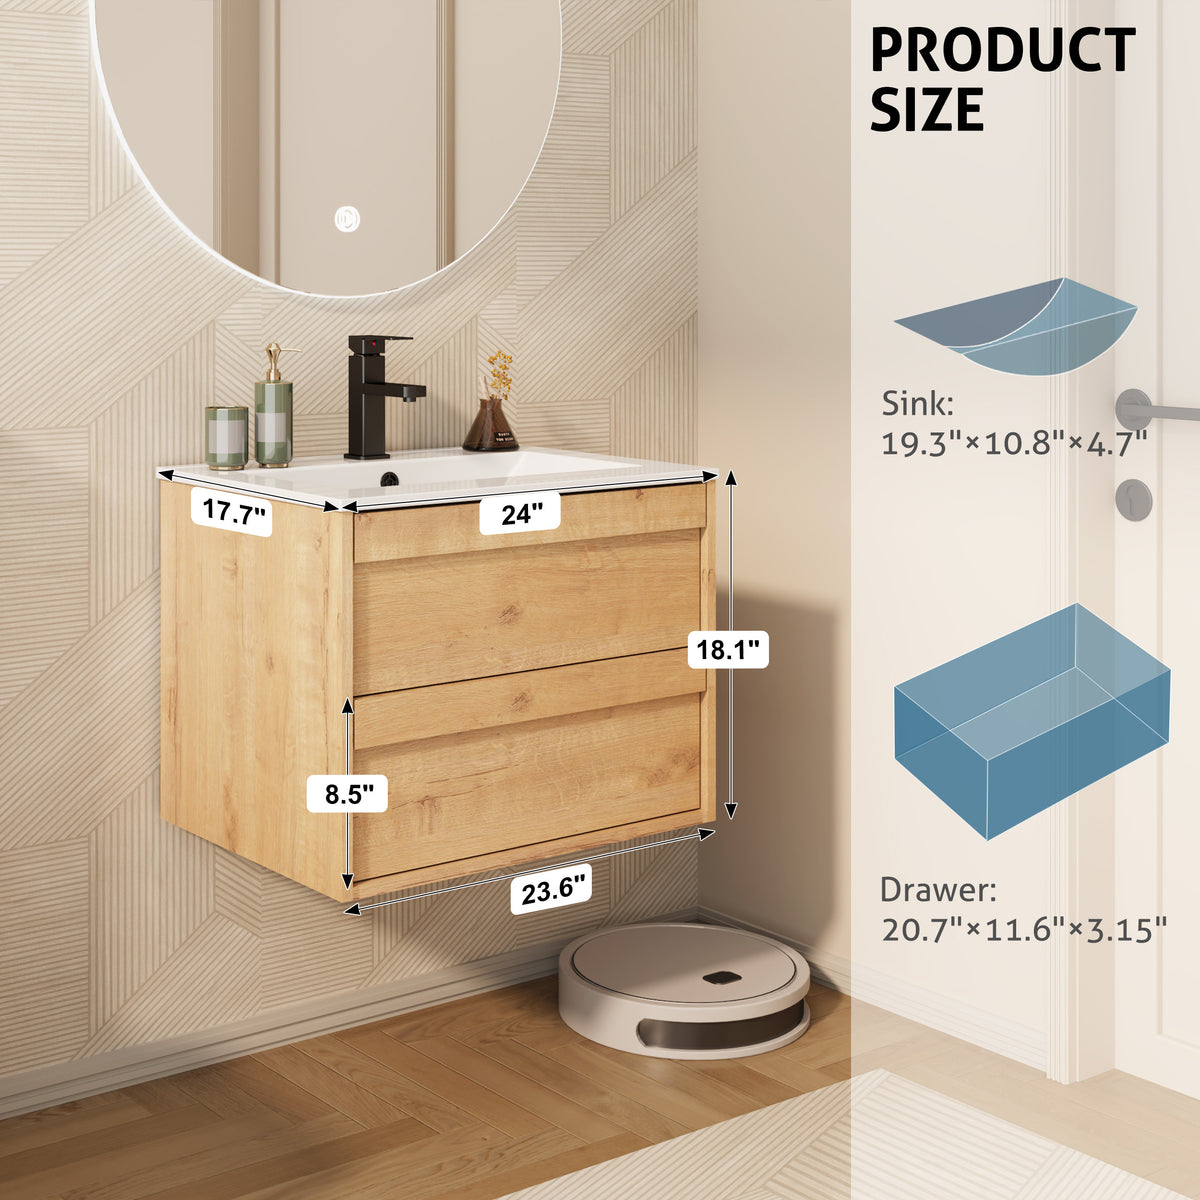 24" Wall Mounted Bathroom Vanity Combo with Single Undermount Sink — Oak